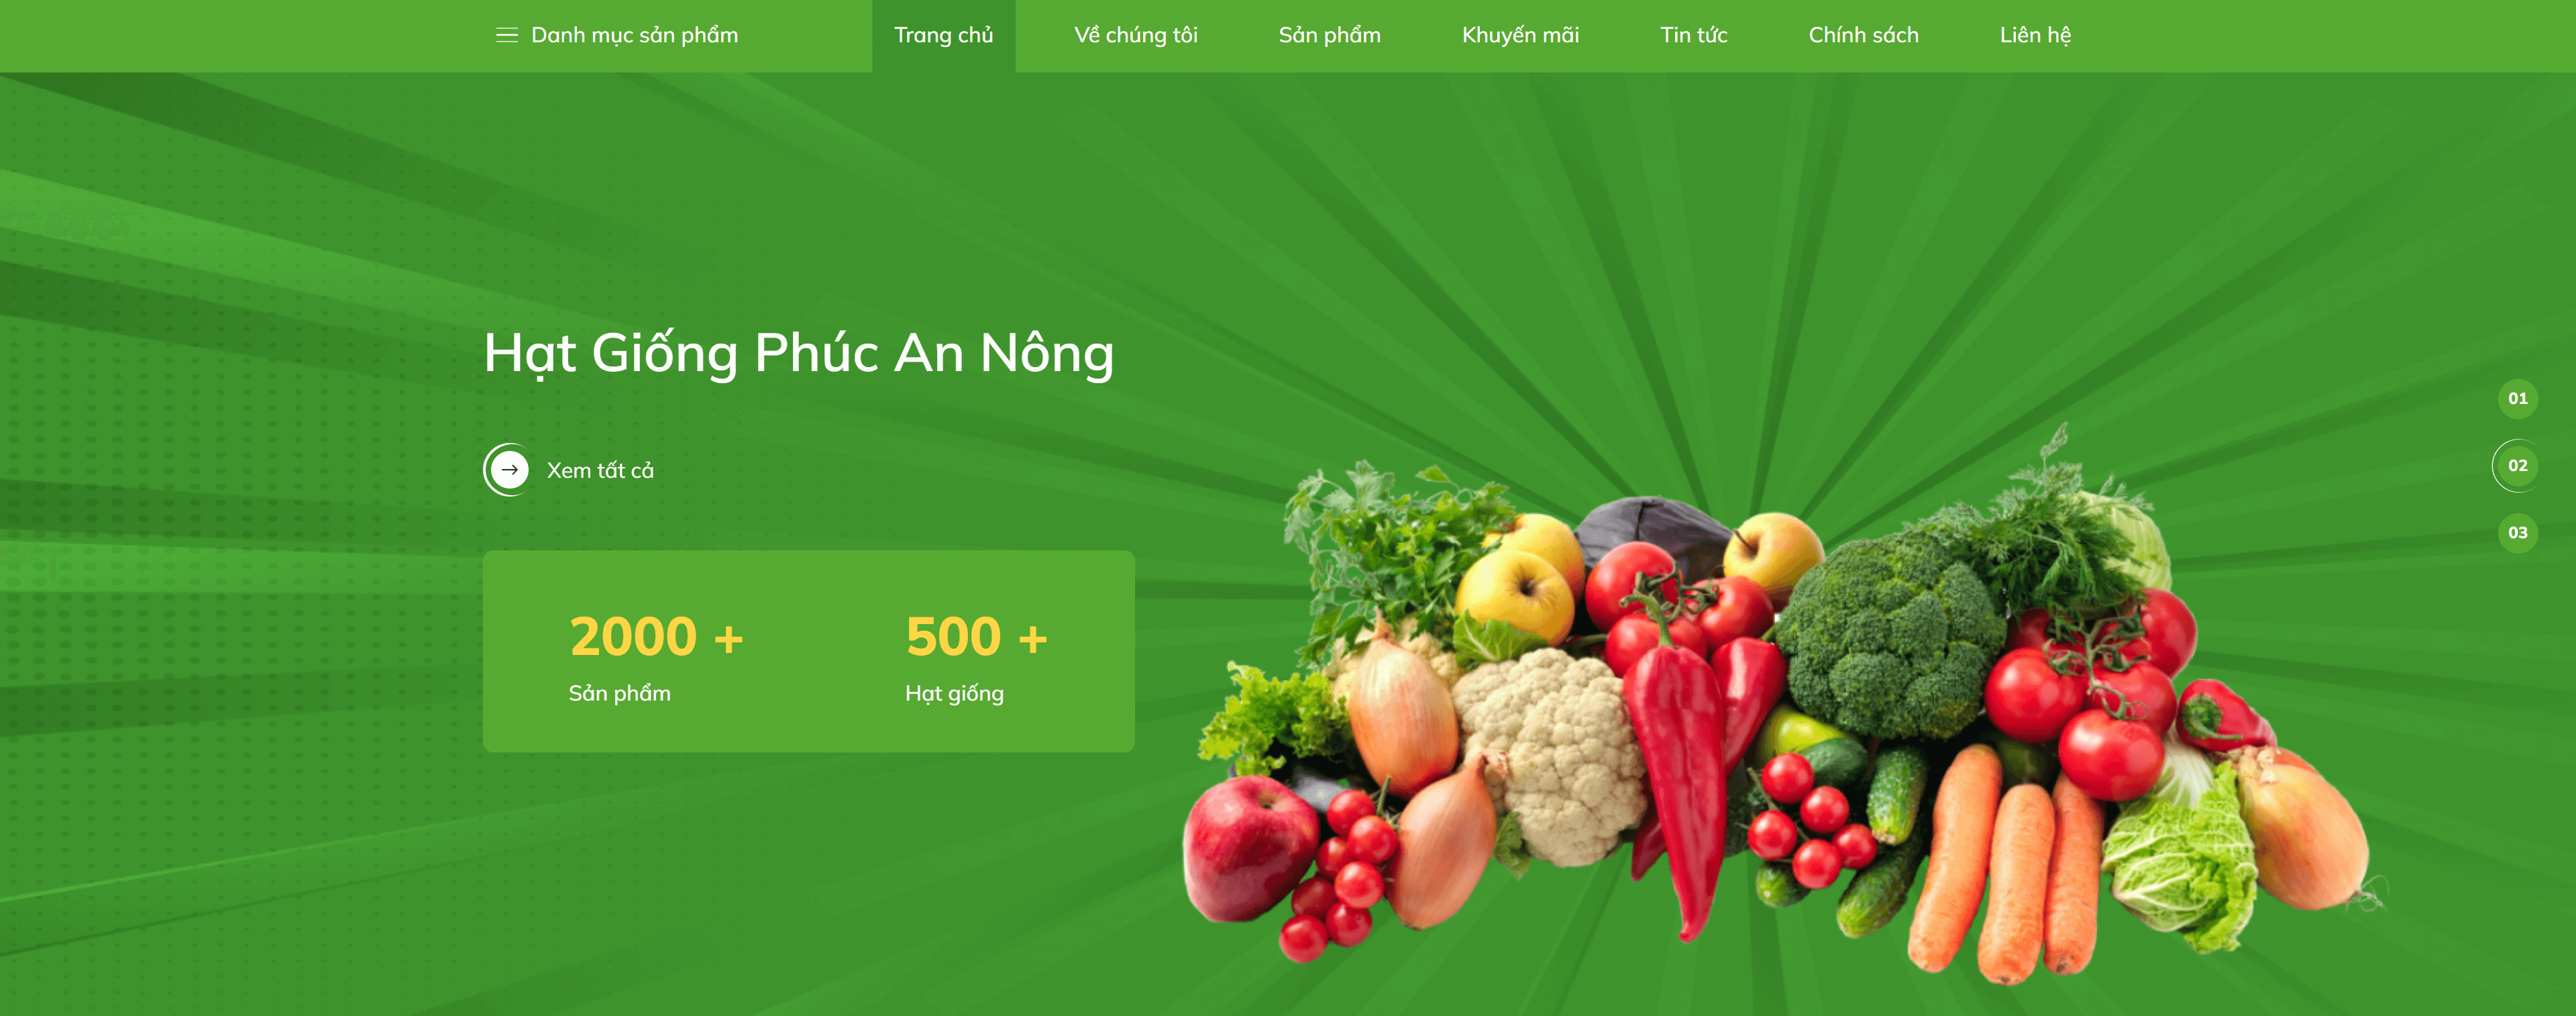 phuc-an-nong-website